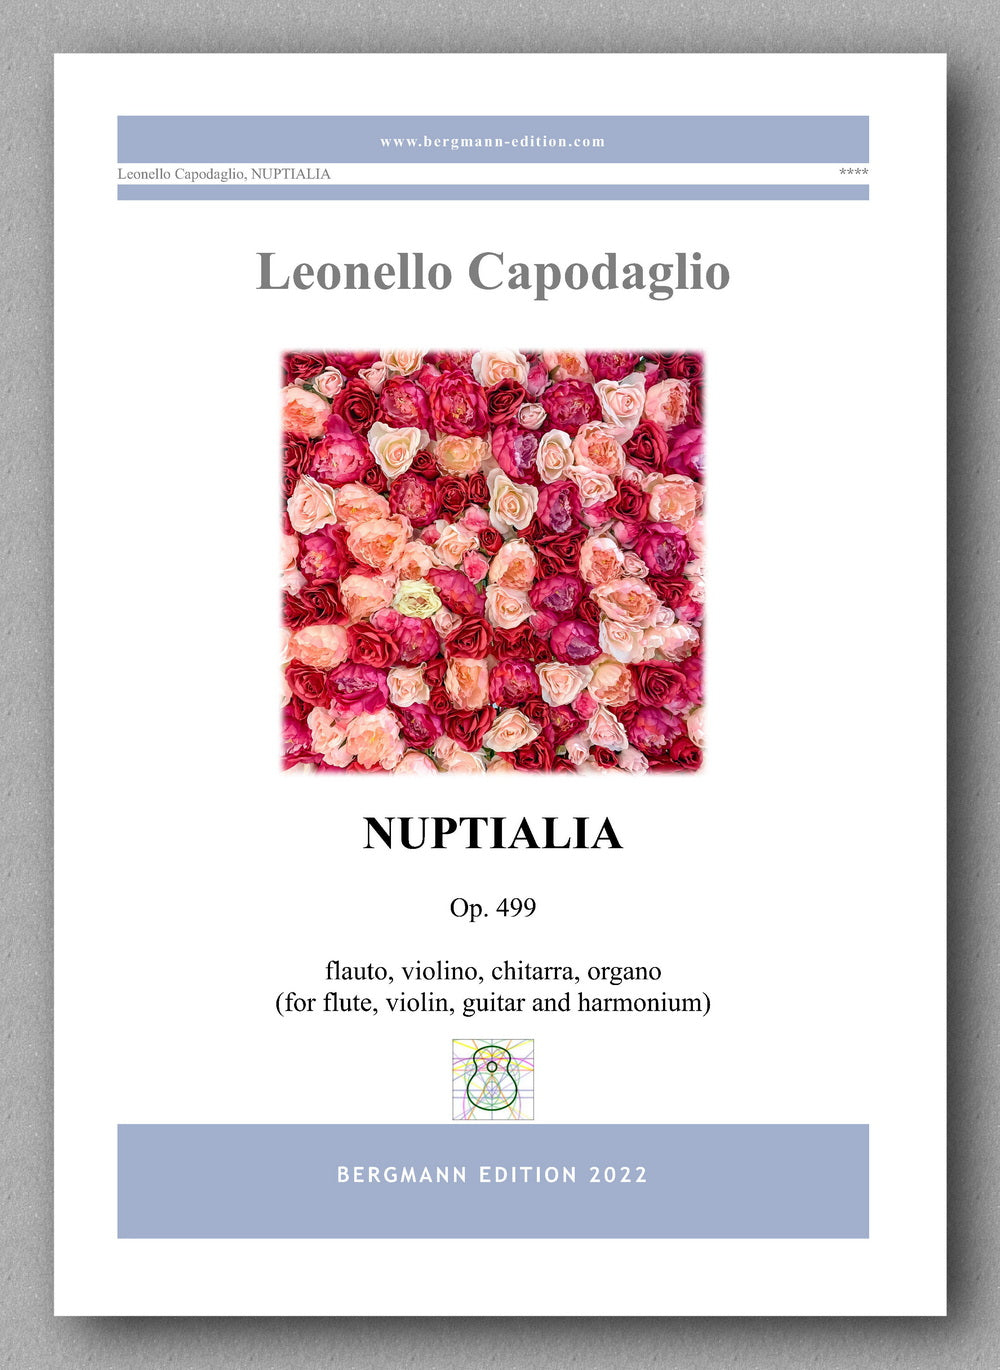 NUPTIALIA, op. 499 by  Leonello Capodaglio - cover